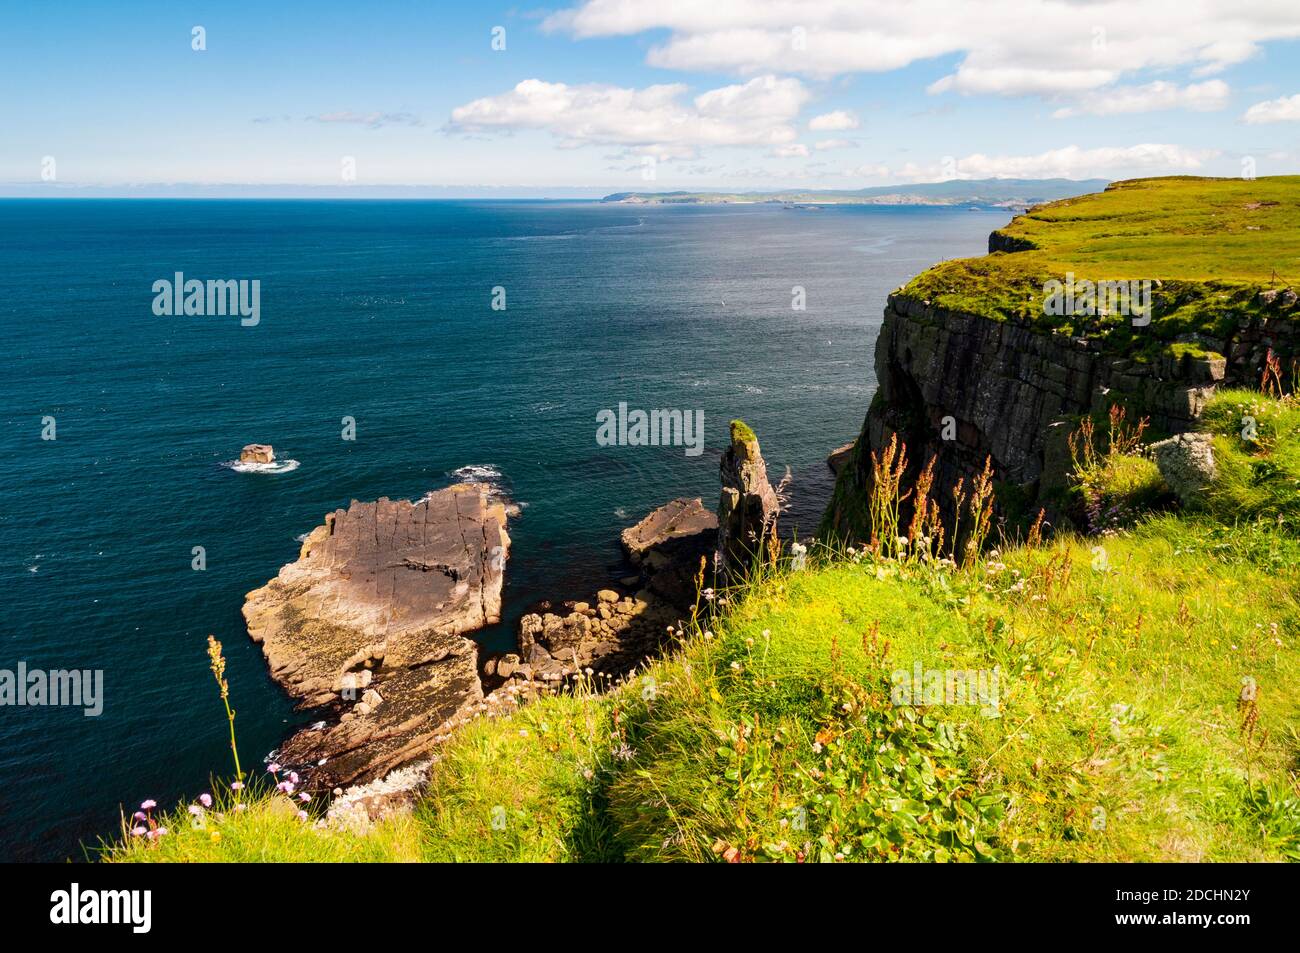 Meeresklippen auf der Insel Handa vor der Nordwestküste Schottlands. Juni. Stockfoto